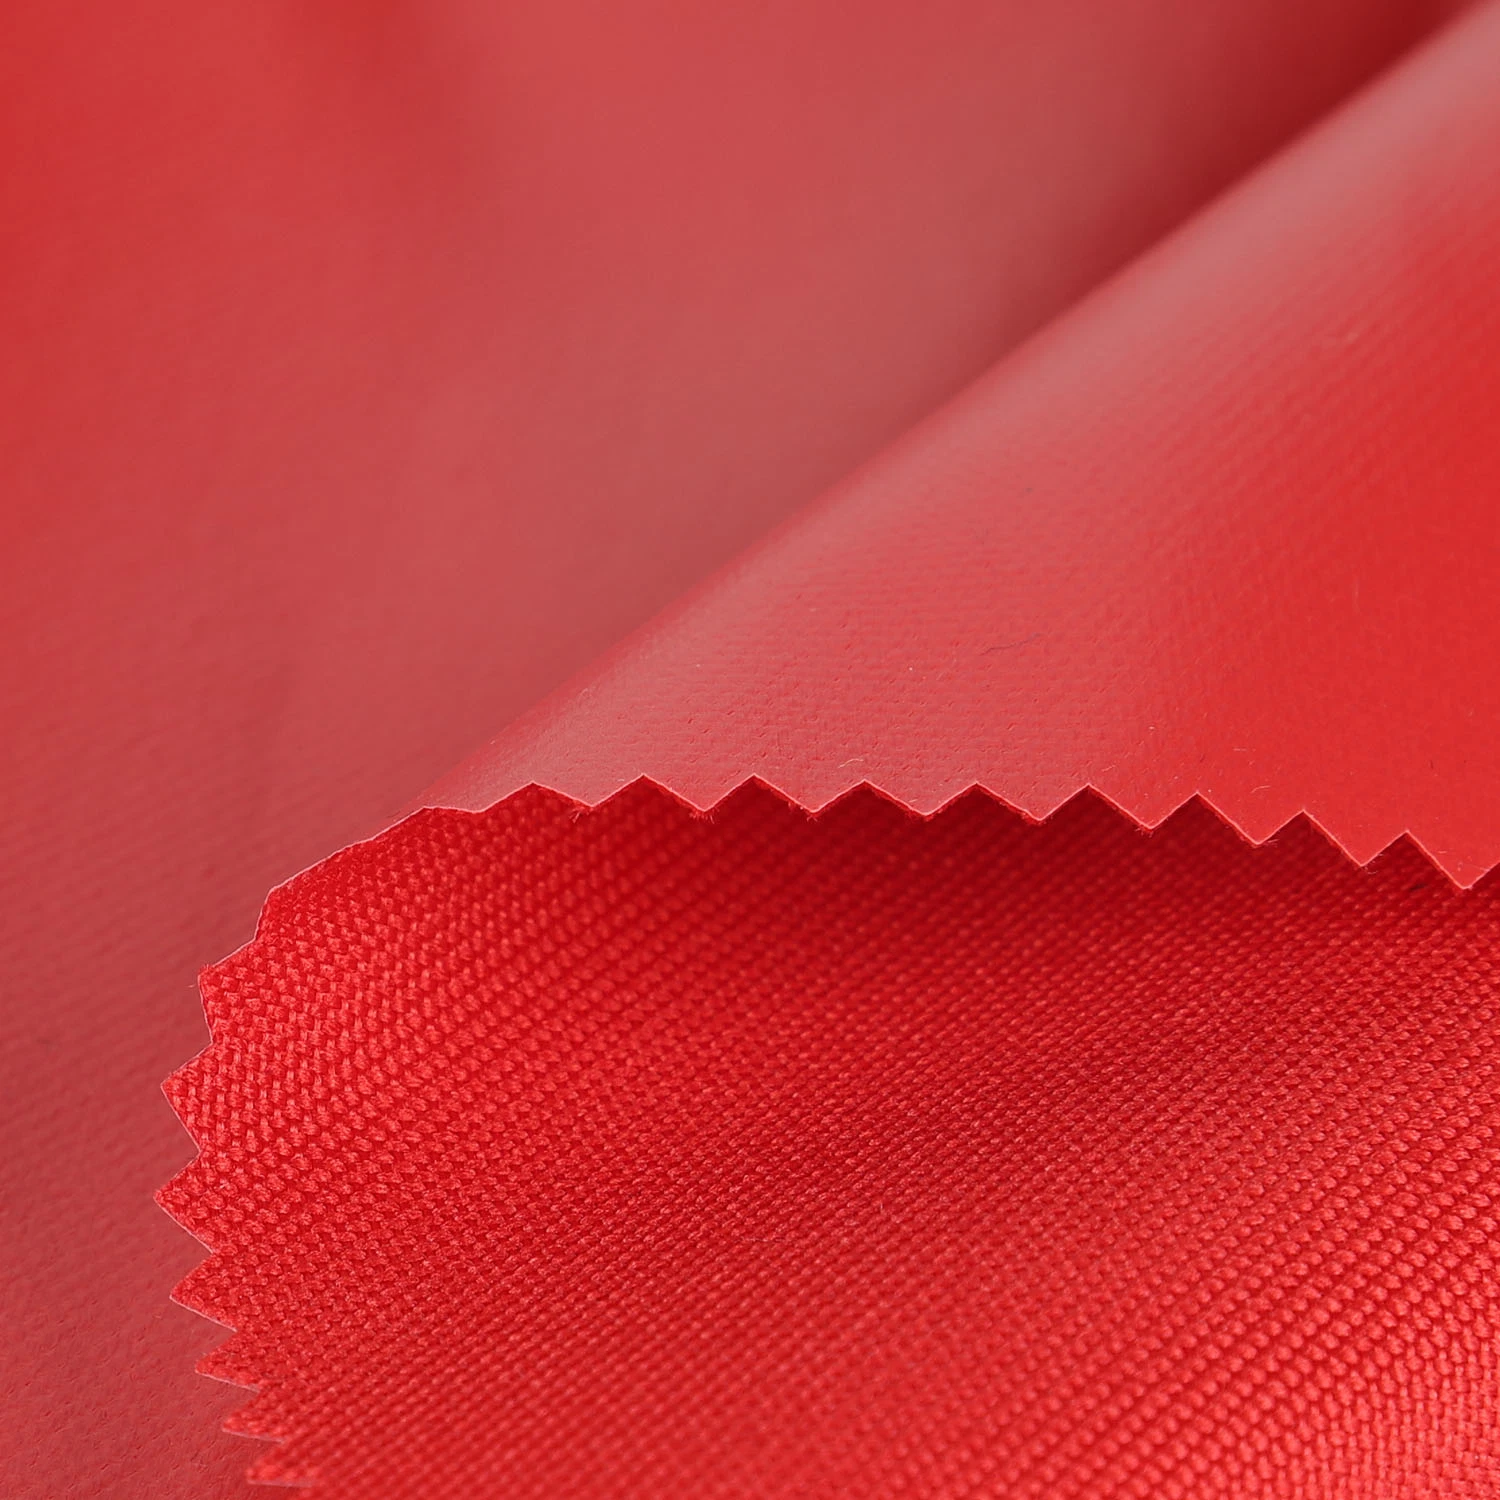 Tissu imperméable en nylon/polyester enduit de PVC PU PA avec revêtement argenté Ripstop Oxford pour sacs, bagages et tentes.